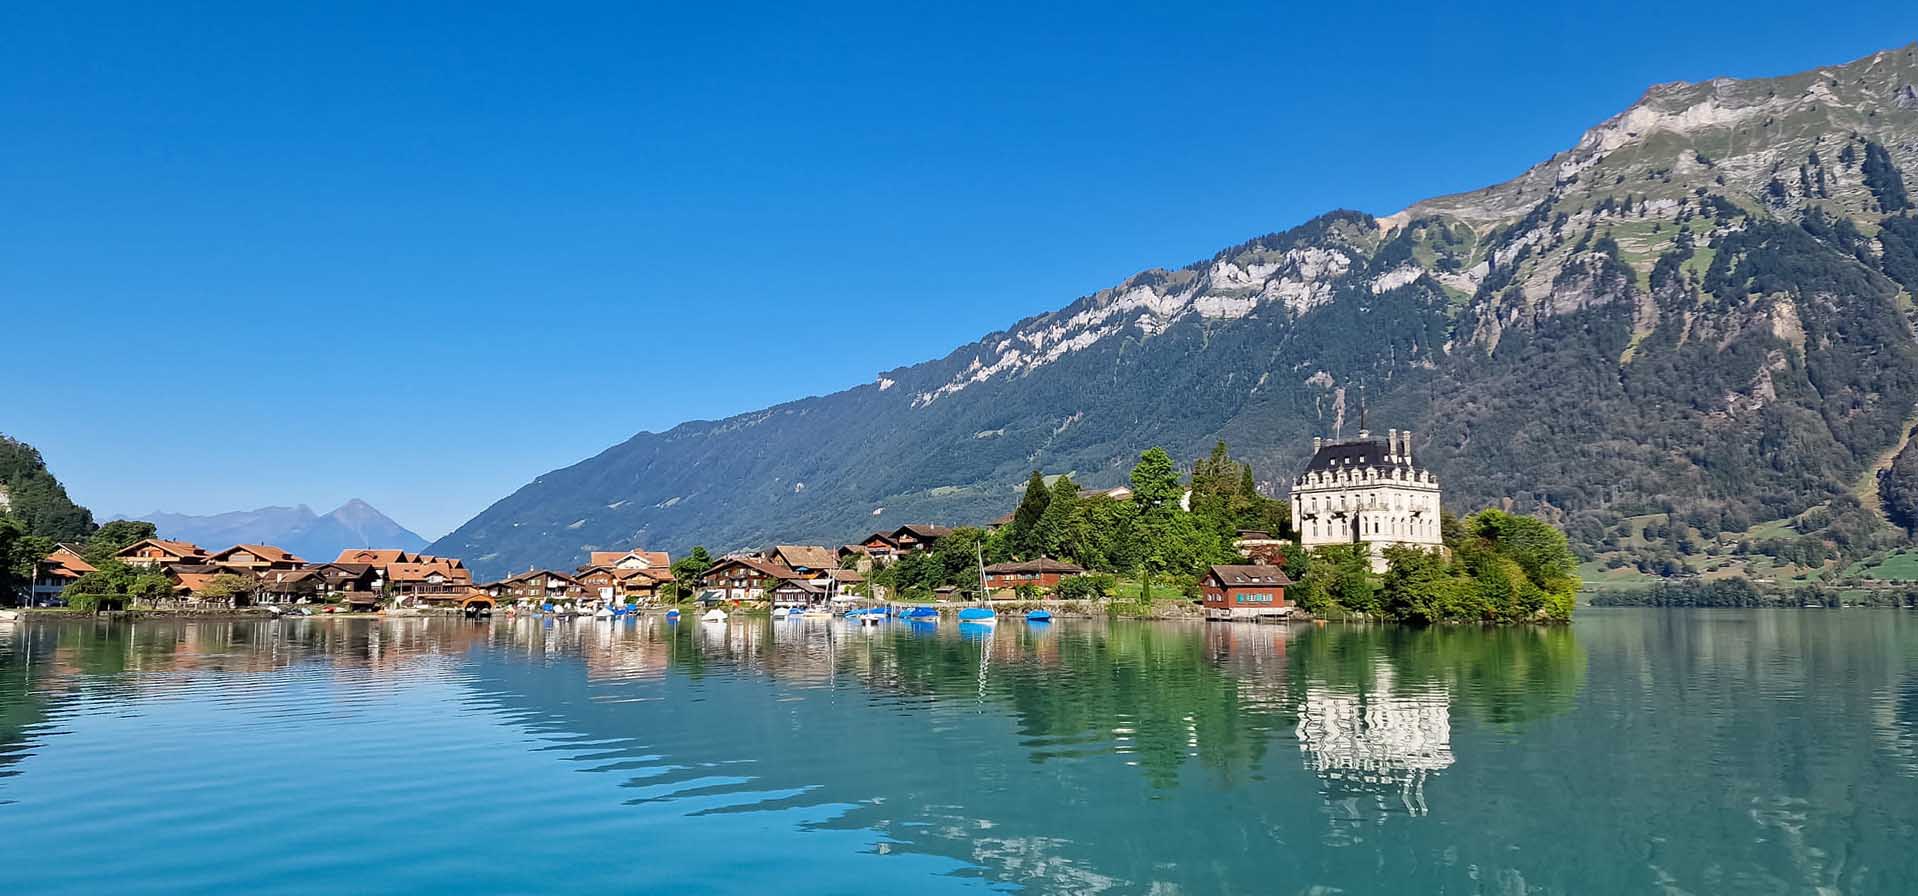 Đến Thụy Sĩ, ngắm làng Iseltwald soi bóng bên bờ hồ Brienz thơ mộng